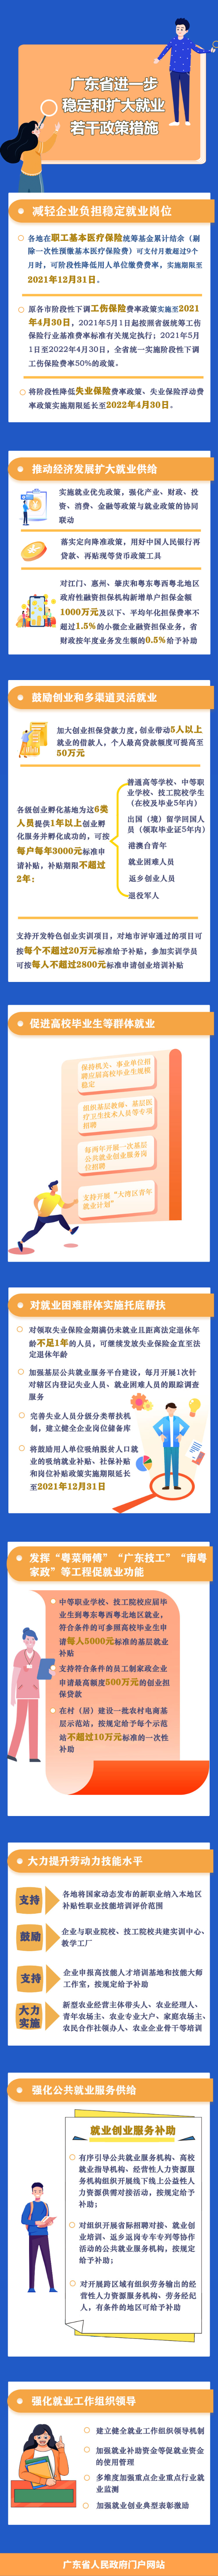 附件4 一图读懂广东省进一步稳定和扩大就业若干政策措施.jpg